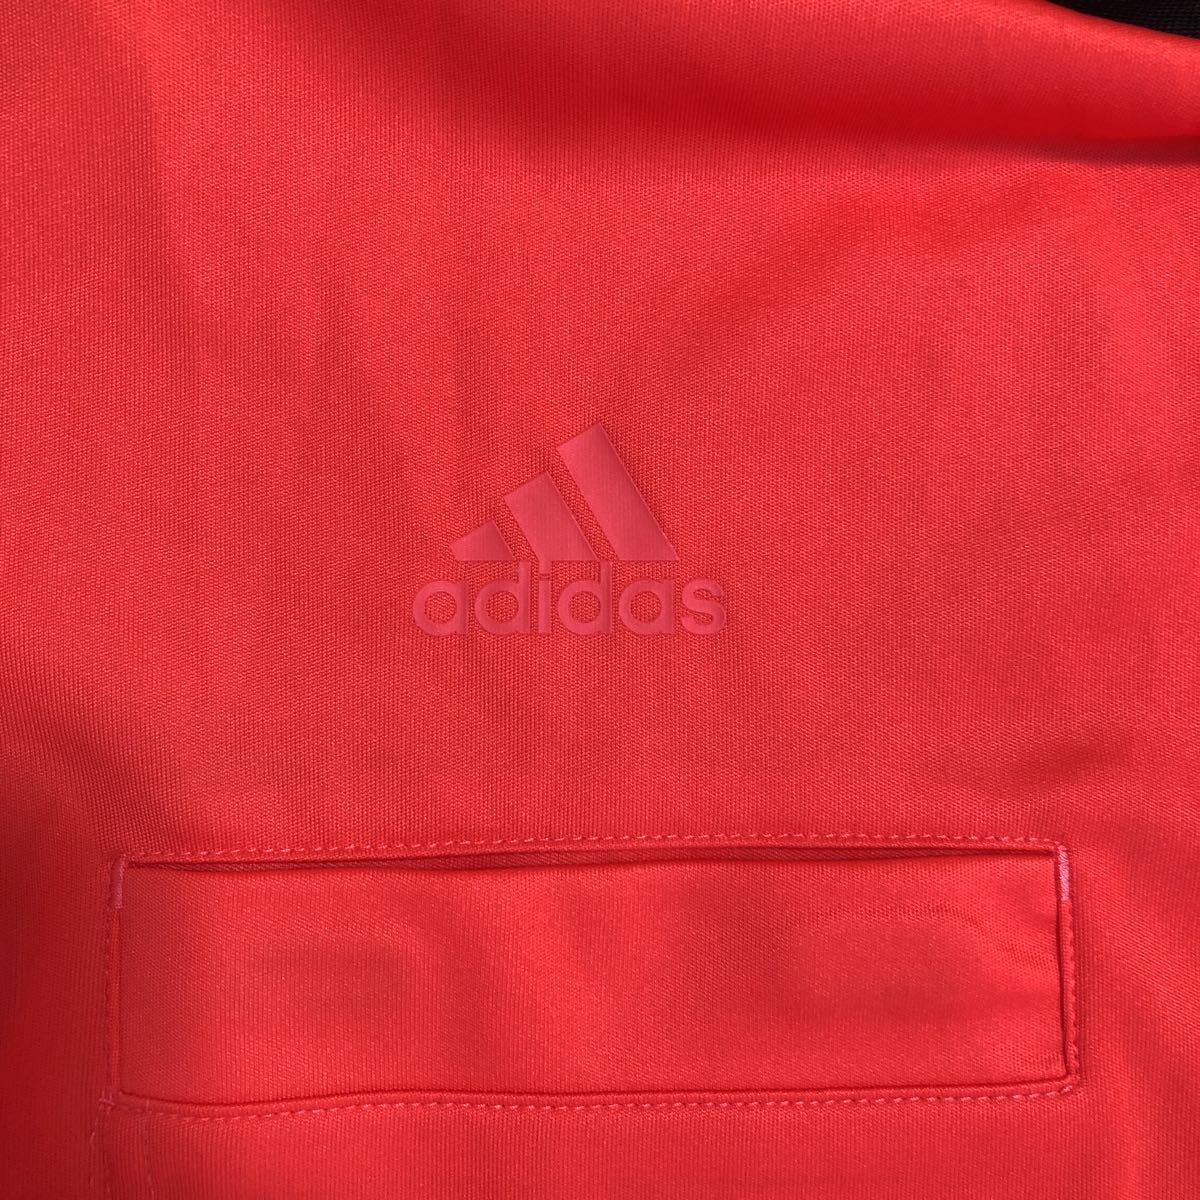 新品未使用 2016 adidas サッカー フットサル 審判用 ウェア レフェリージャージー 半袖シャツ 2枚セット パステル 水色 ピンク_画像10